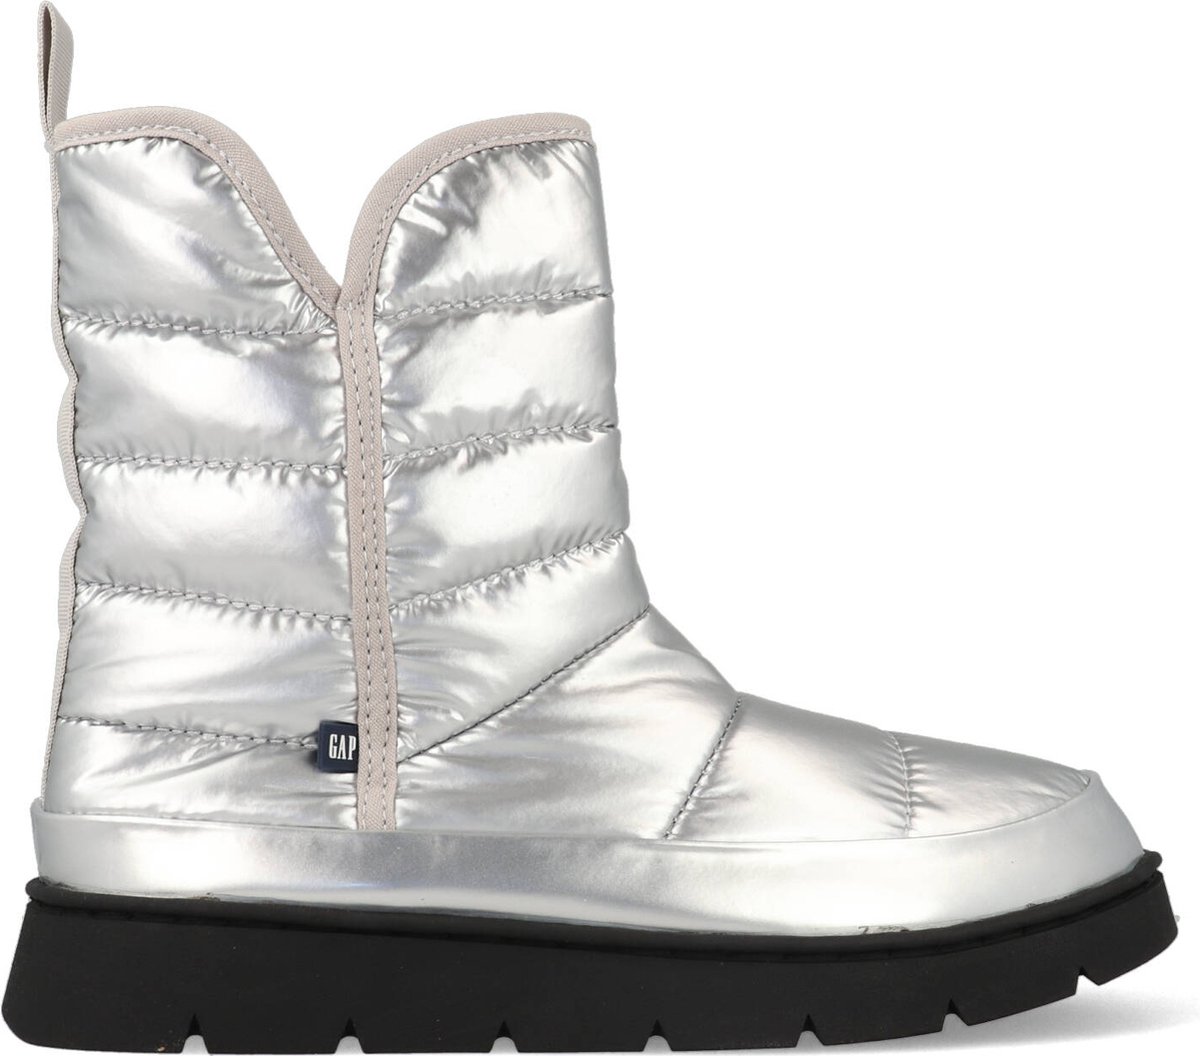 Gap - Ankle Boot/Bootie - Female - Silver - 40 - Laarzen